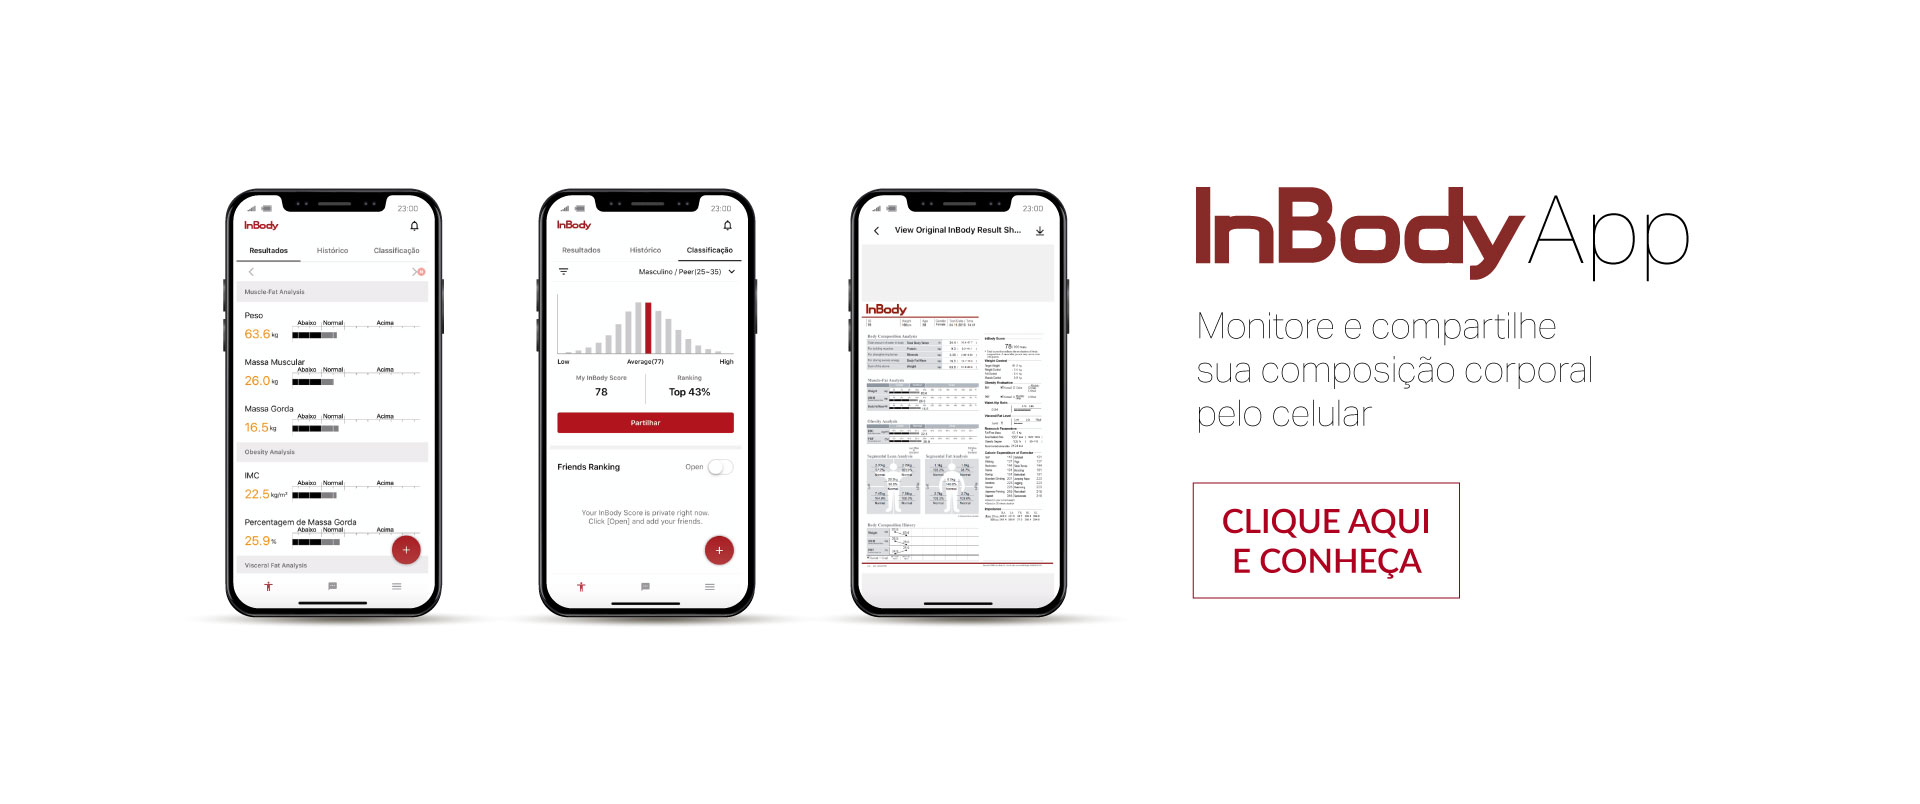 InBody App - Monitore e compartilhe sua composição corporal pelo celular.